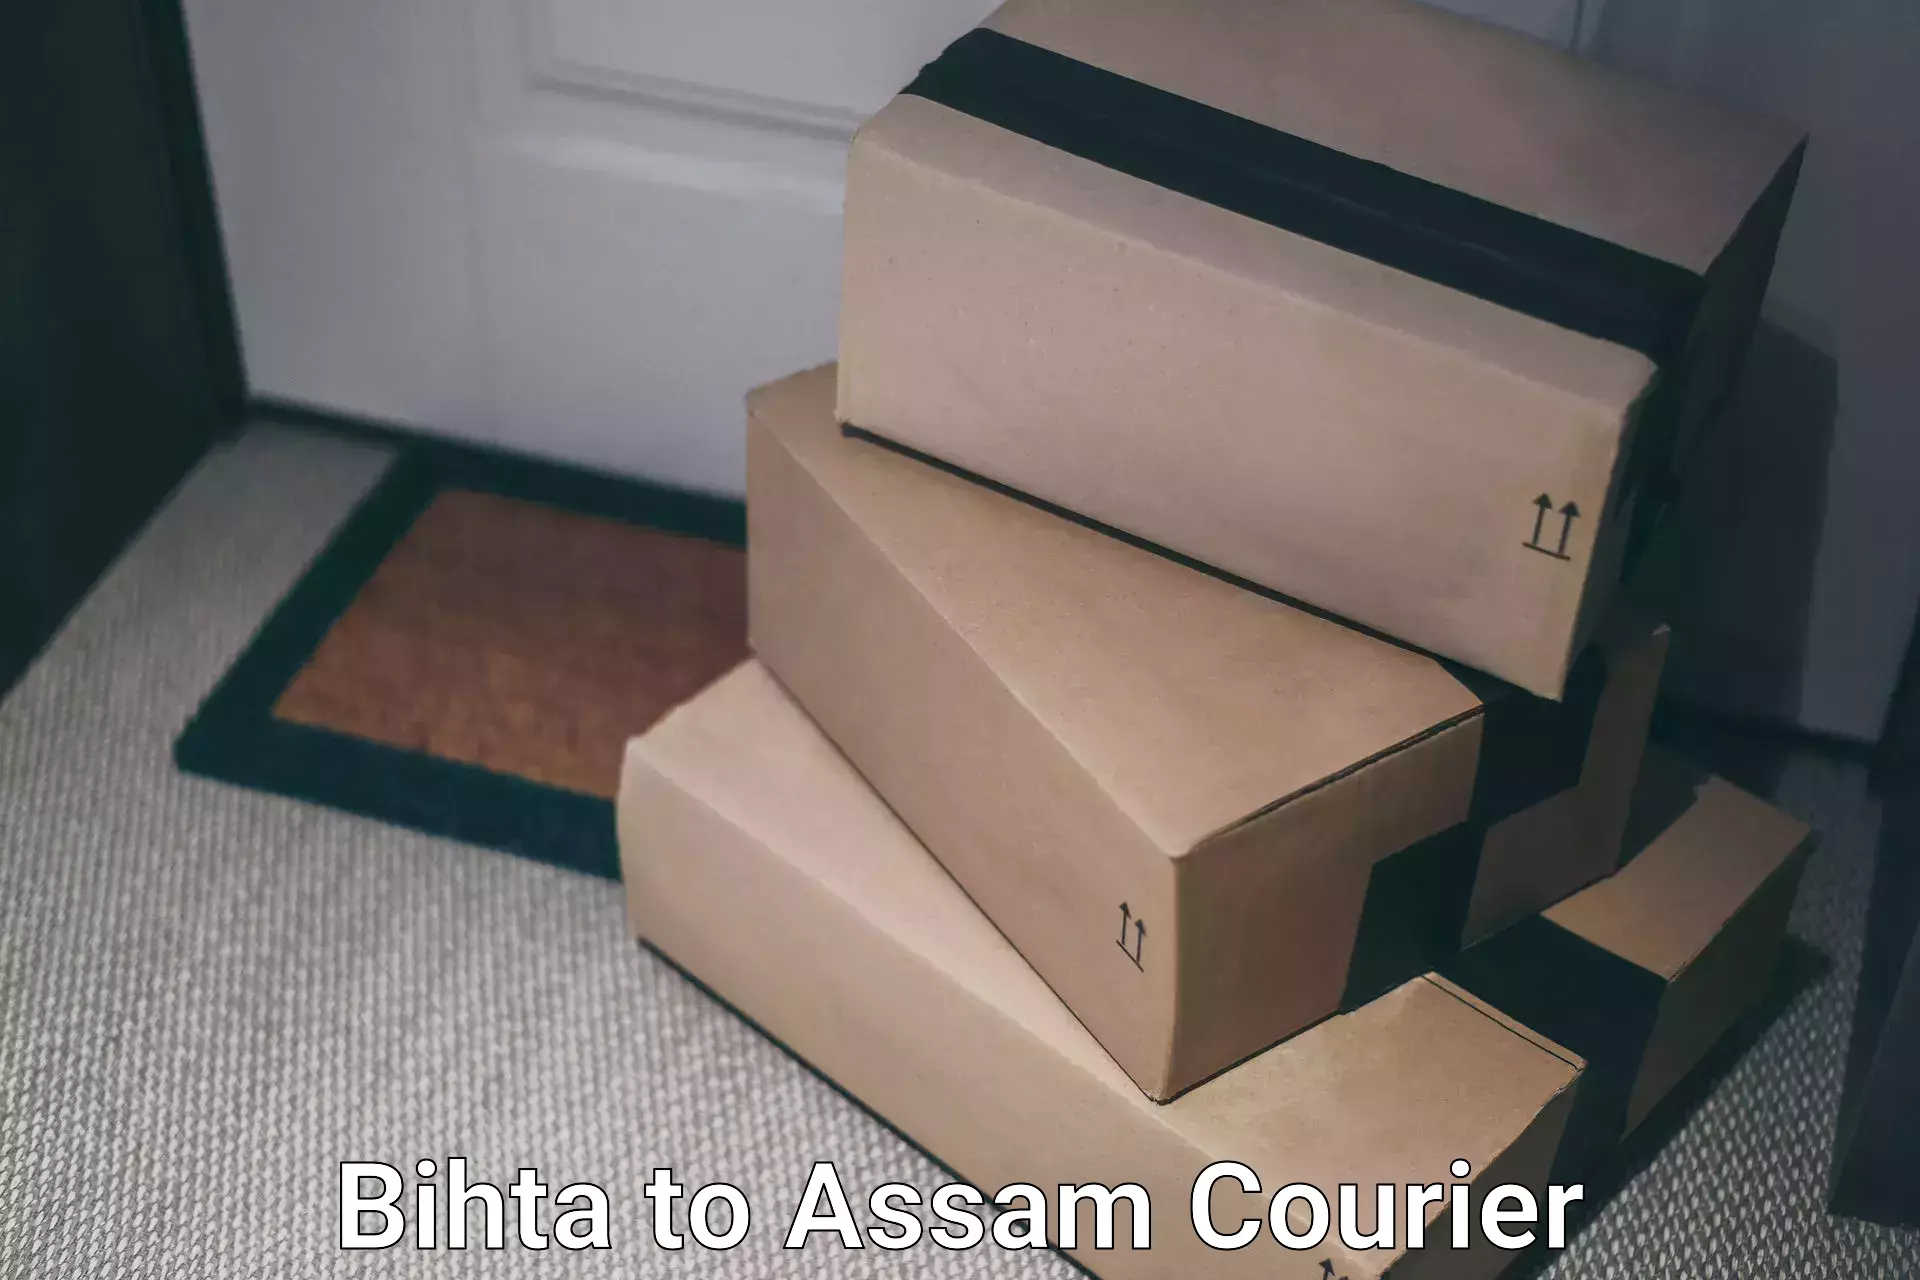 Bulk order courier Bihta to Assam